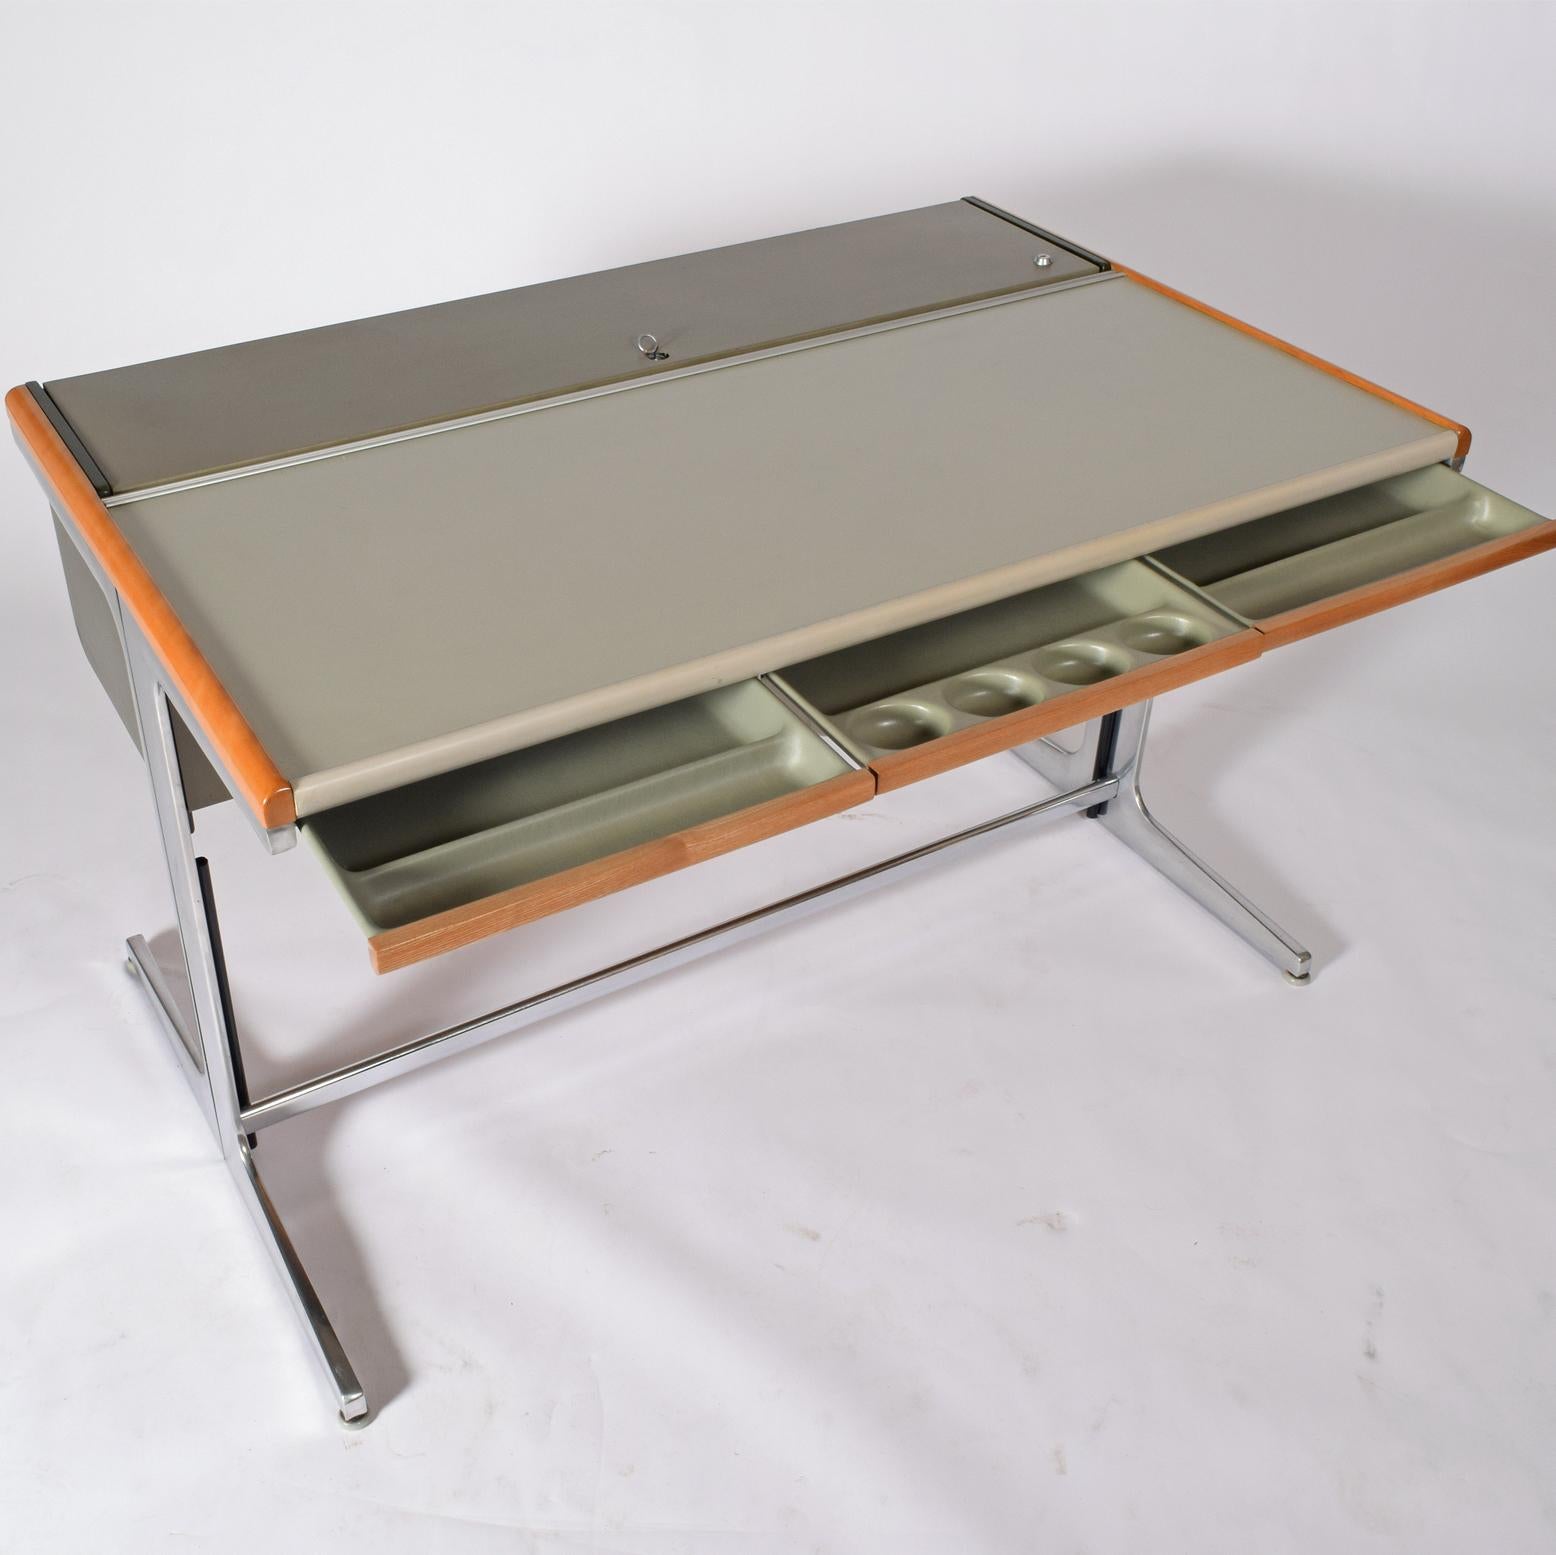 Aluminum George Nelson Auction Office Desk #64902 for Herman Miller